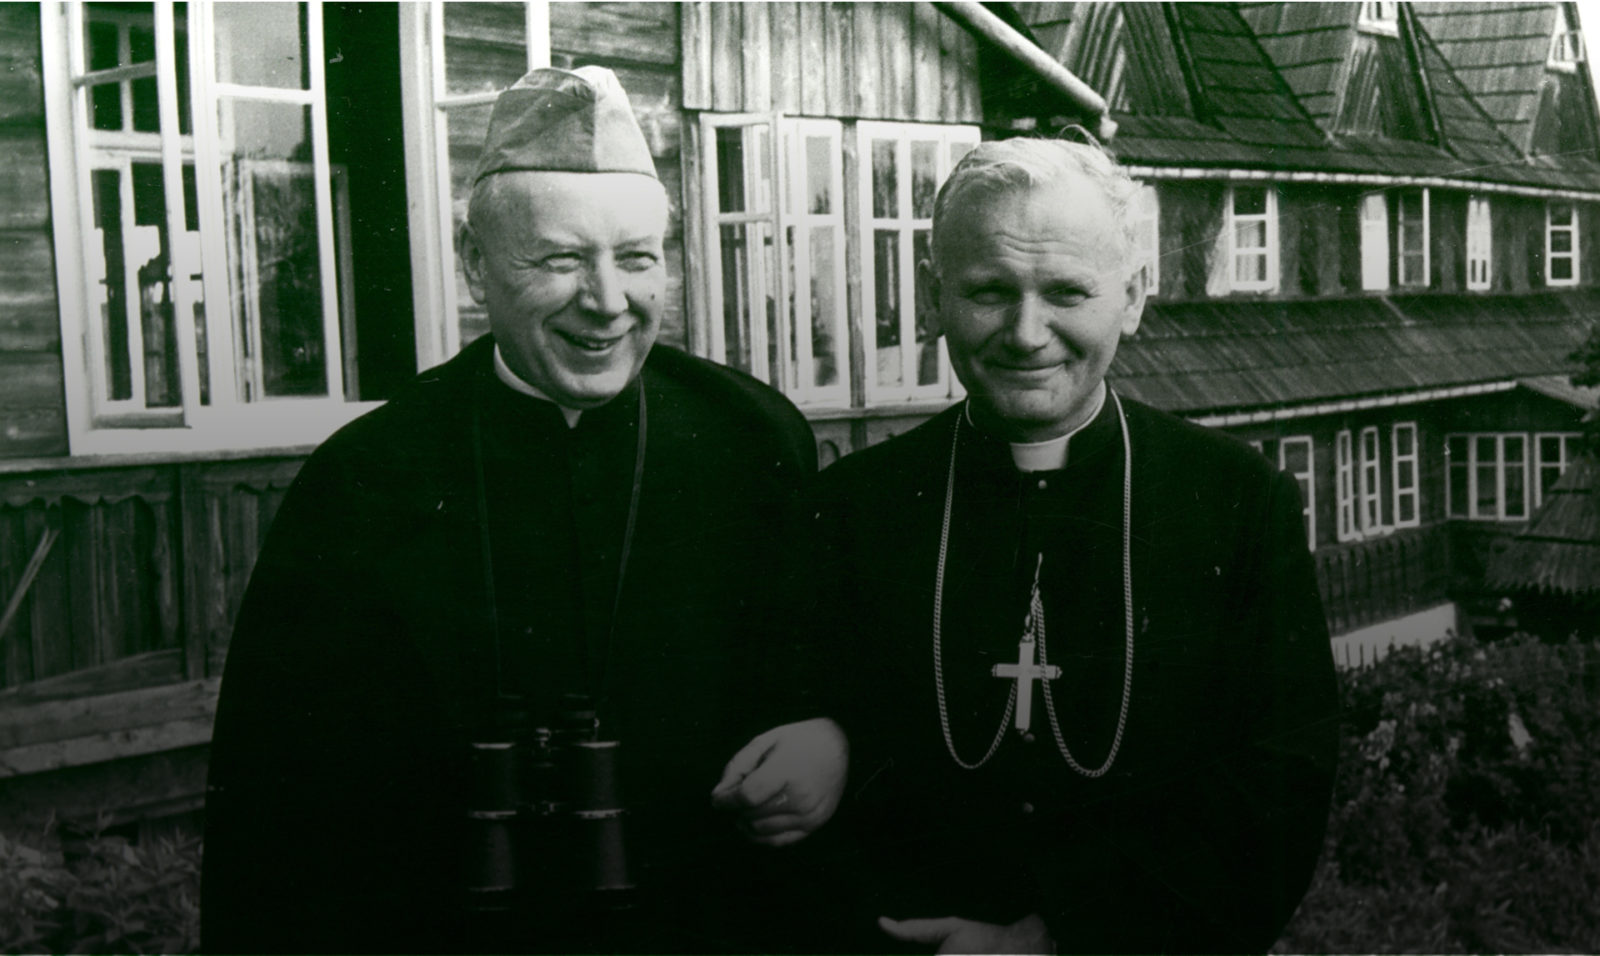 Kardynałowie na Bachledówce – Ks. Kardynał Karol Wojtyła